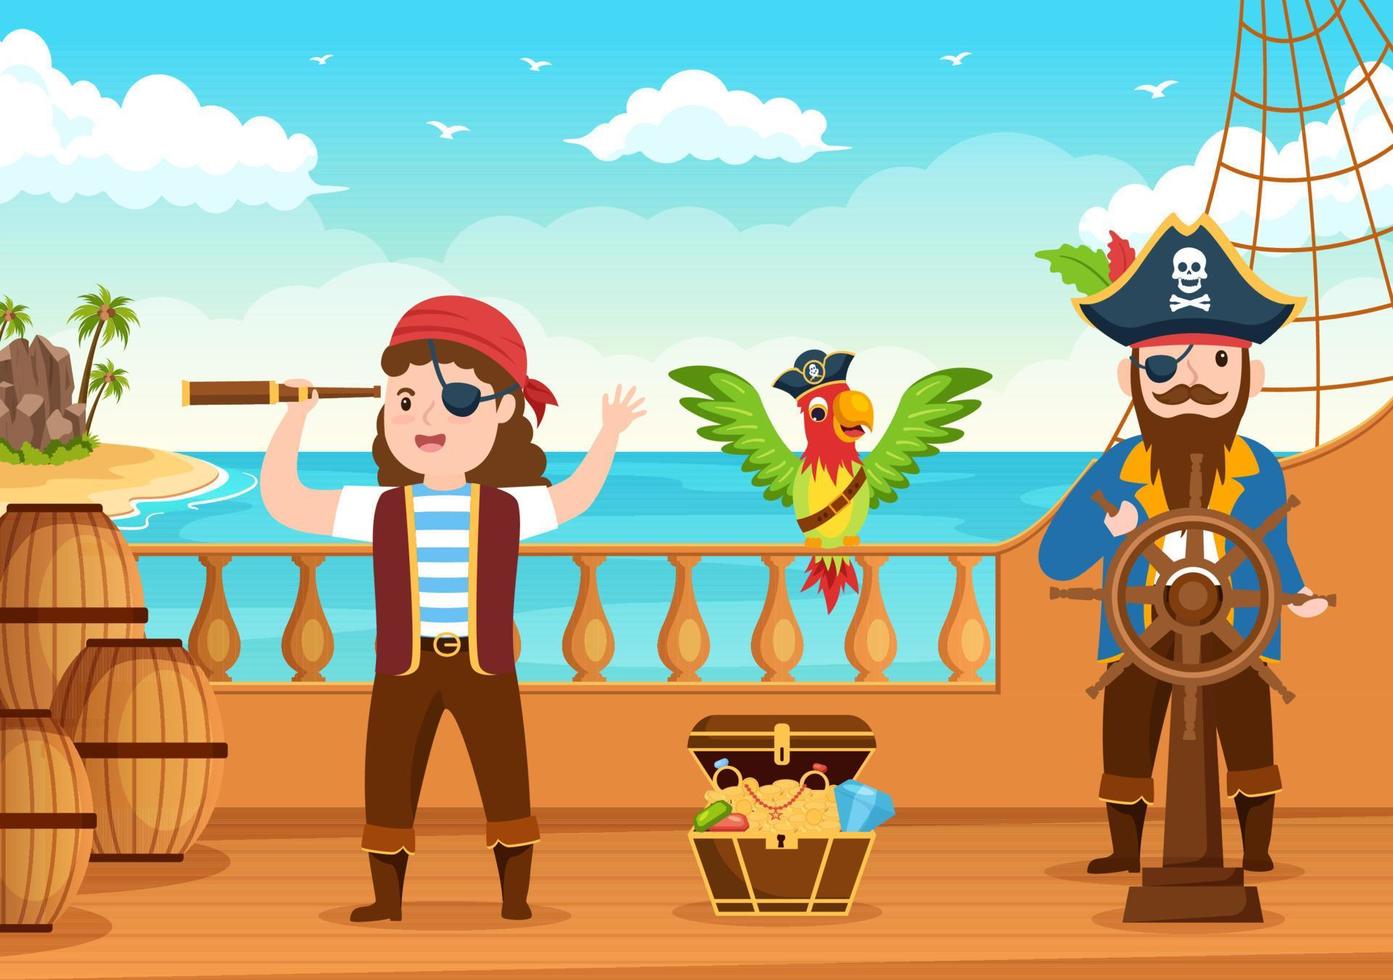 linda ilustración de personaje de caricatura pirata con rueda de madera, cofre, caribe vintage, piratas y jolly roger en un barco en el mar o en la isla vector